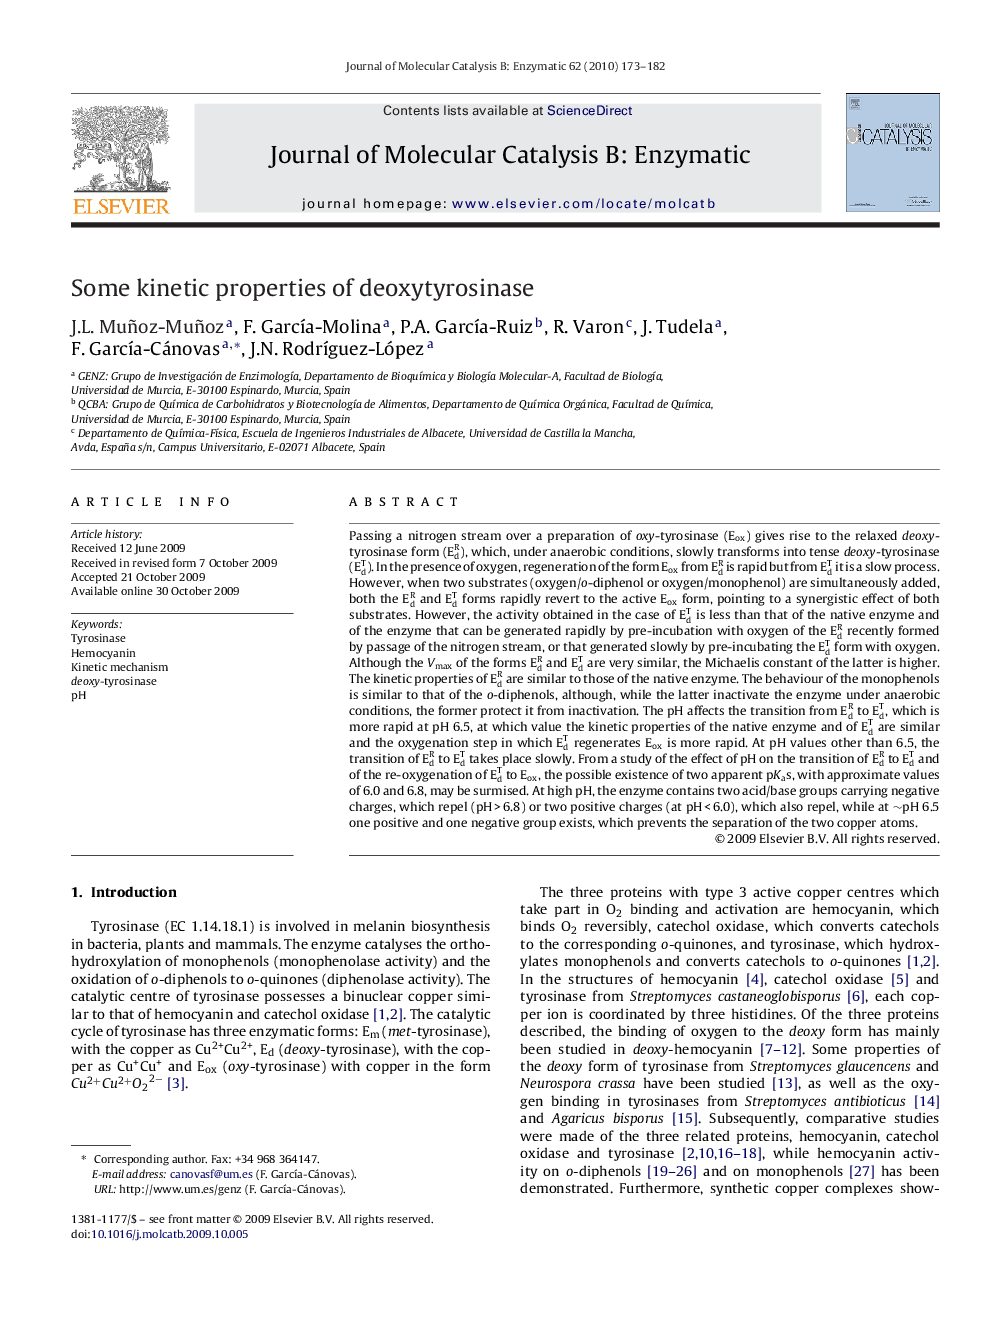 Some kinetic properties of deoxytyrosinase